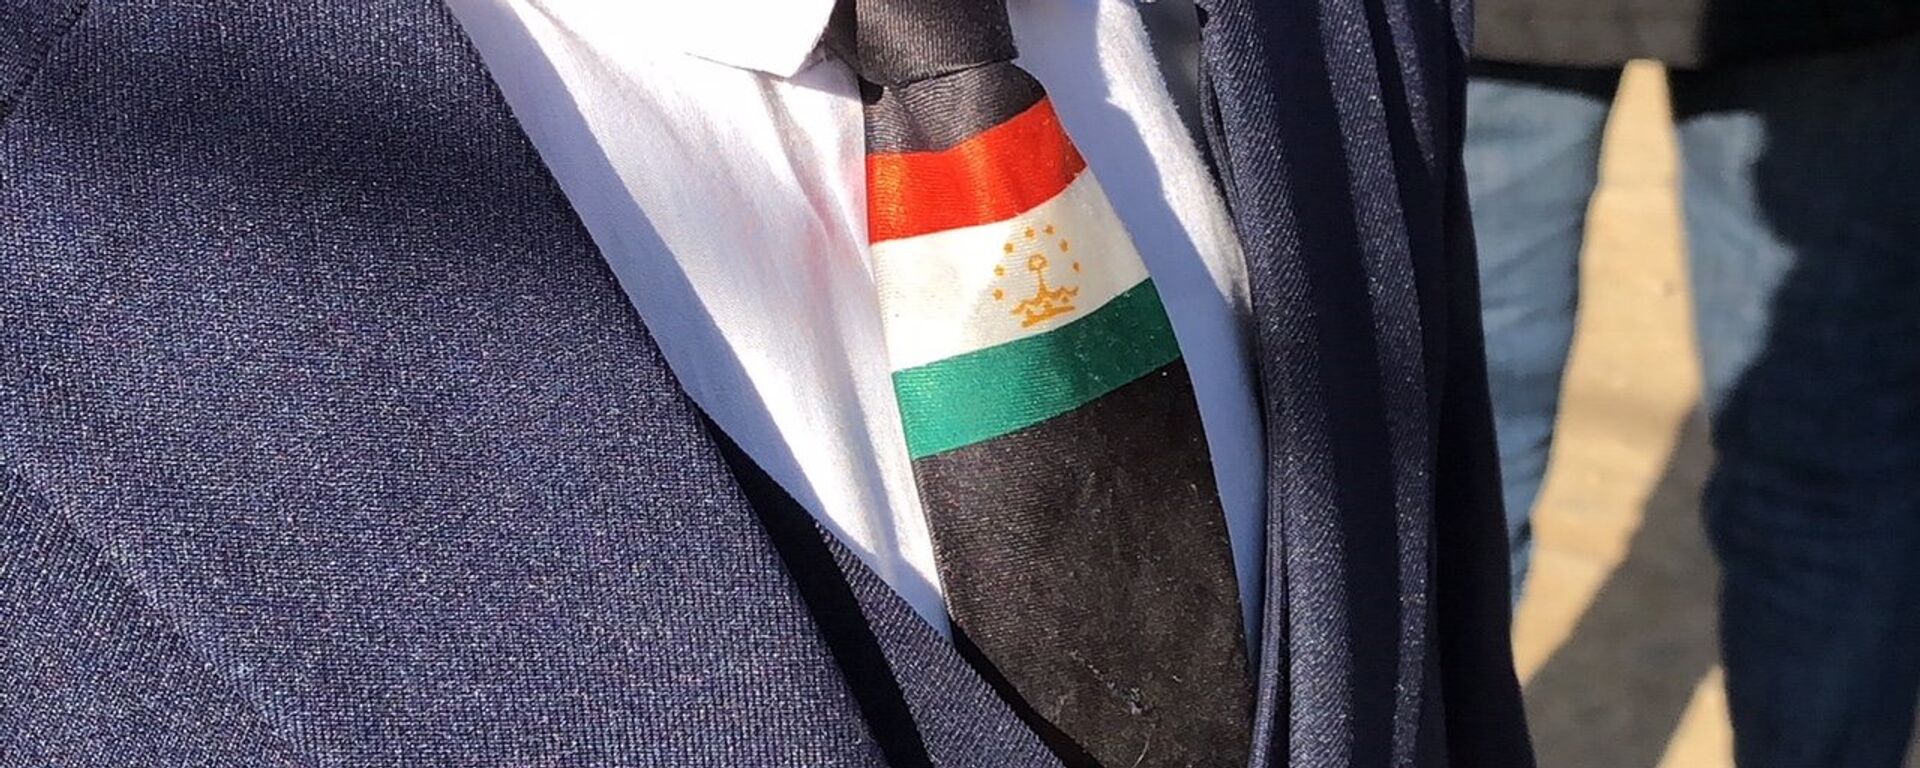 Галстук с флагом Таджикистана - Sputnik Таджикистан, 1920, 12.05.2021